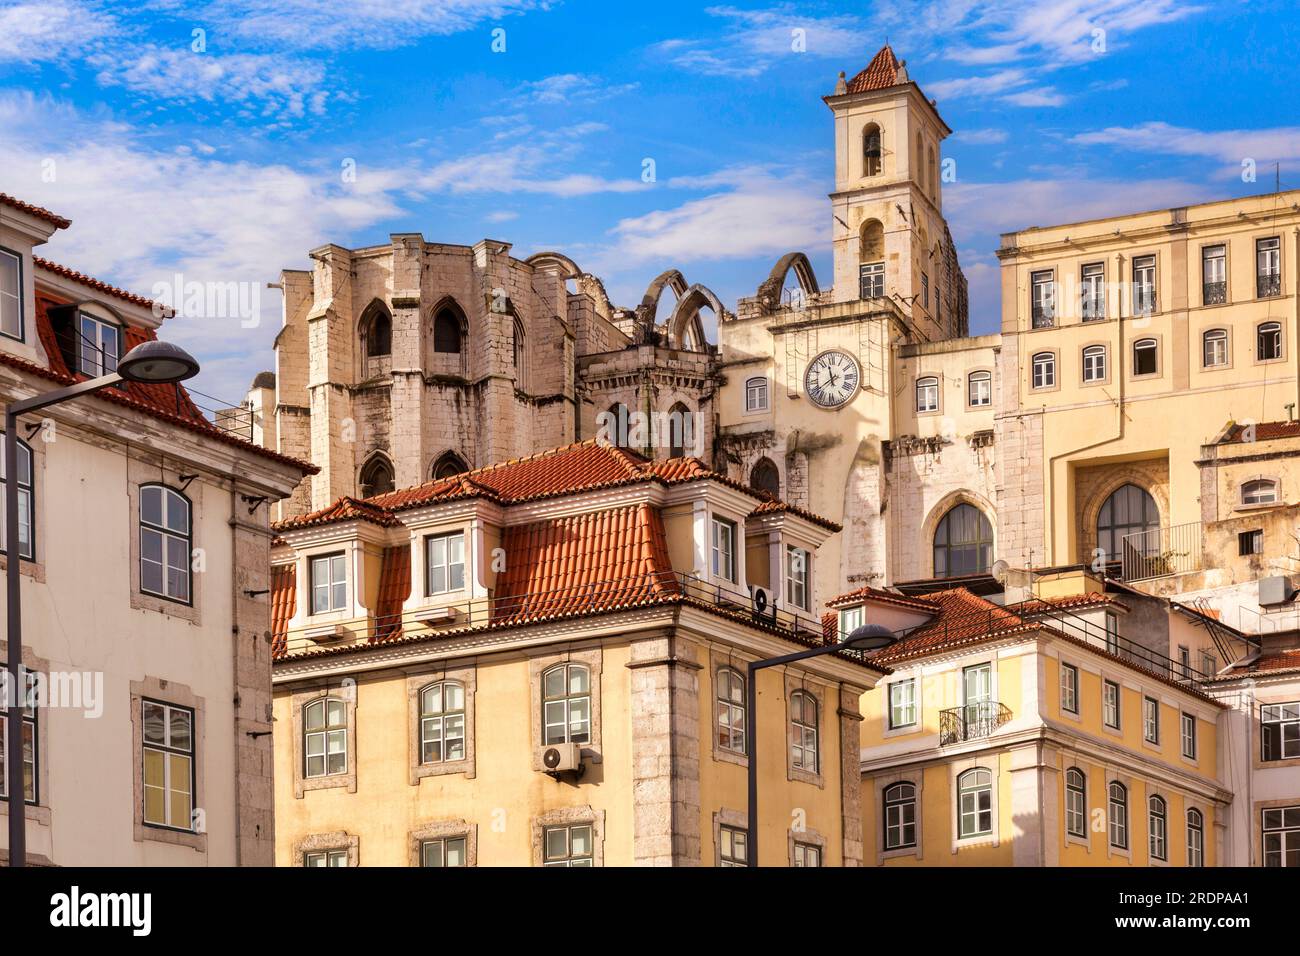 Bâtiments historiques dans le centre de Lisbonne, Portugal, avec les ruines du couvent du Carmo, détruit par un tremblement de terre en 1755. Banque D'Images